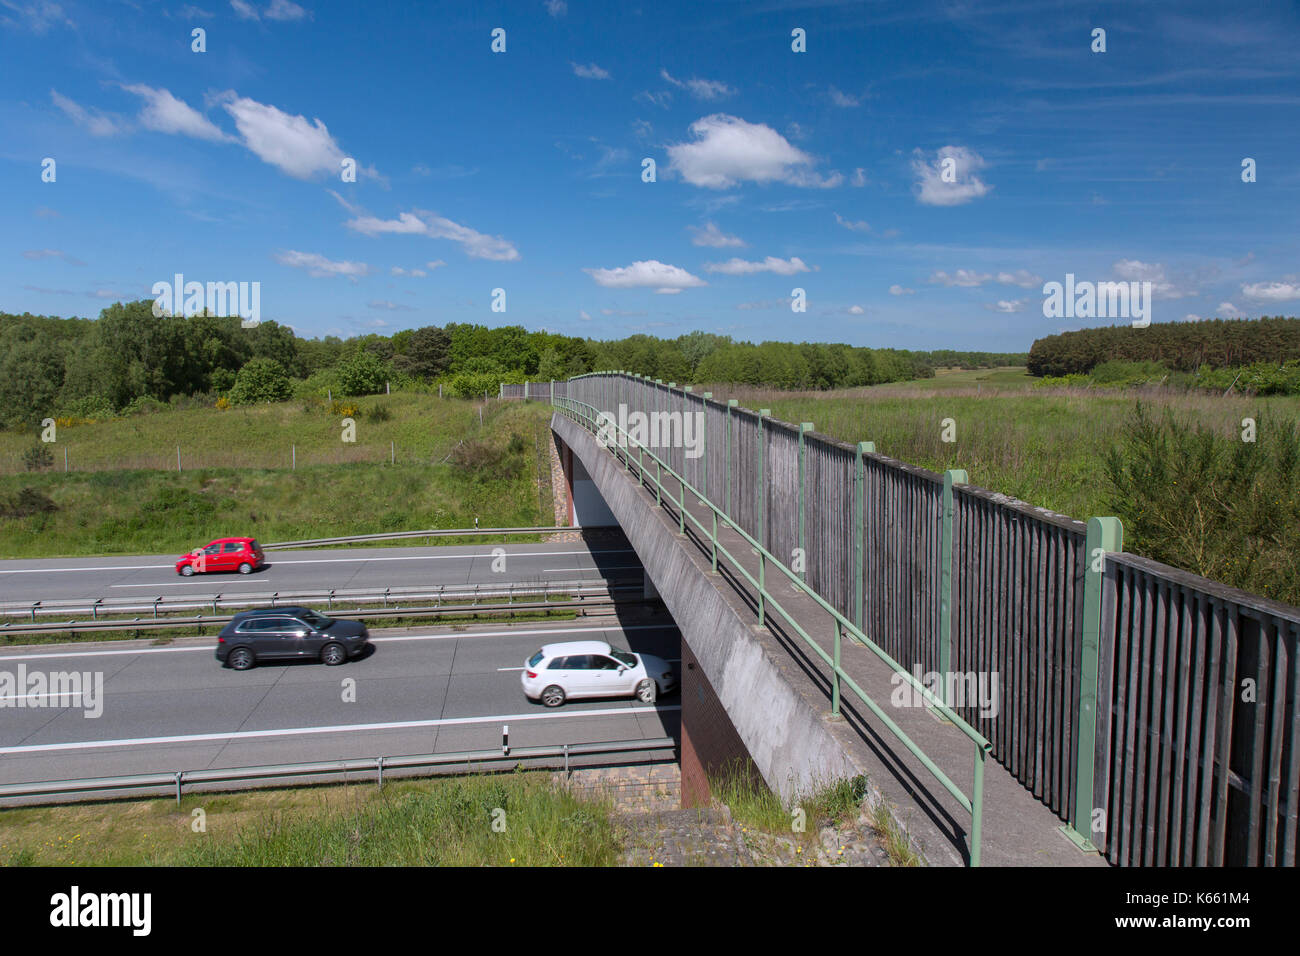 Pont de la faune / animaux / Faune / passage passage ecoduct sur autoroute reliant les habitats des animaux et d'éviter les collisions avec les véhicules Banque D'Images